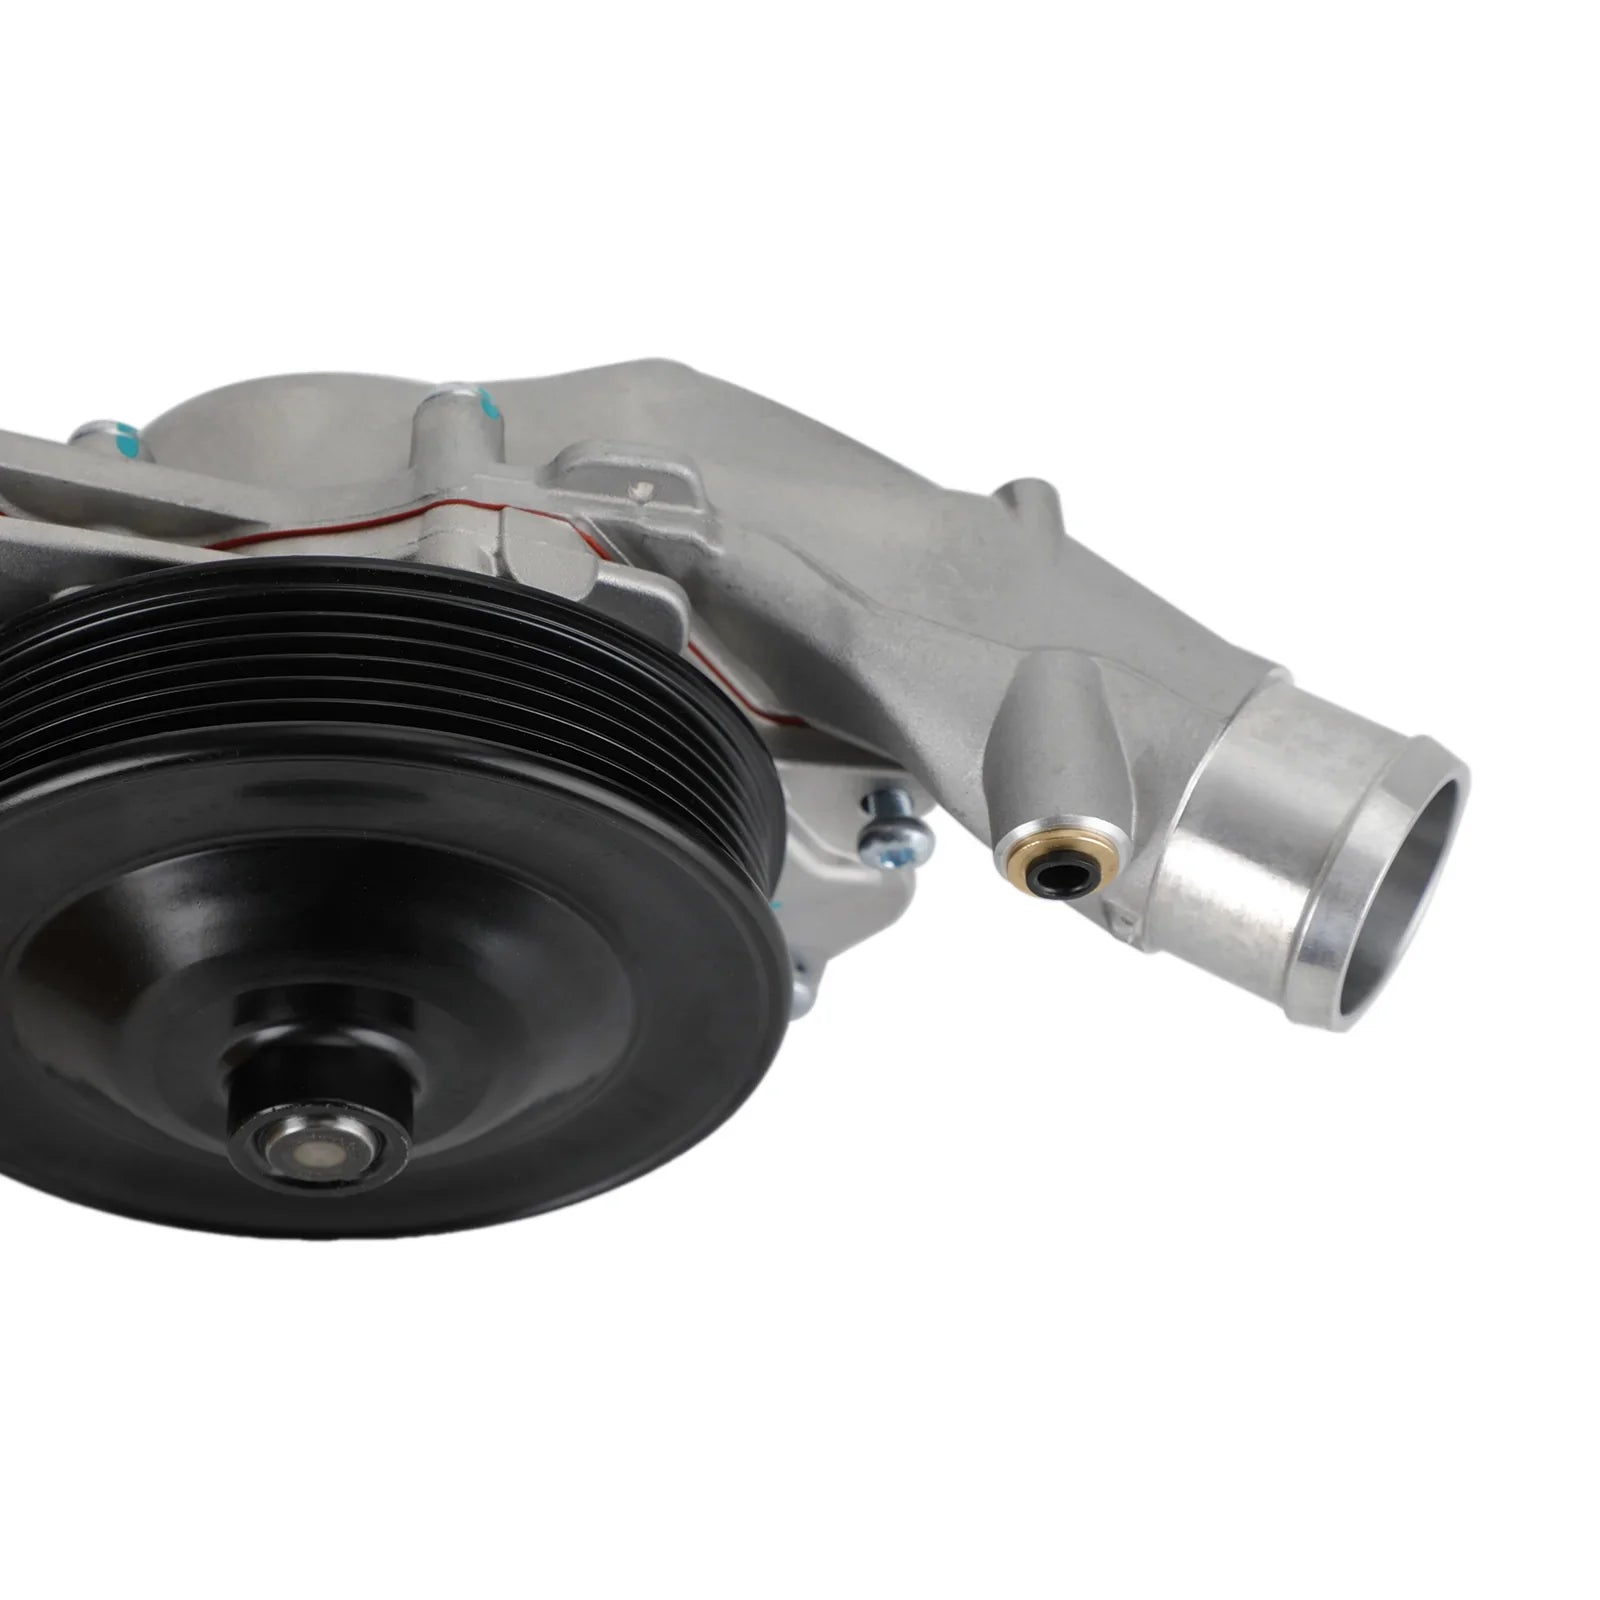 Pompa acqua Jaguar Land Rover V8 con connettore guarnizione bullone + kit termostato